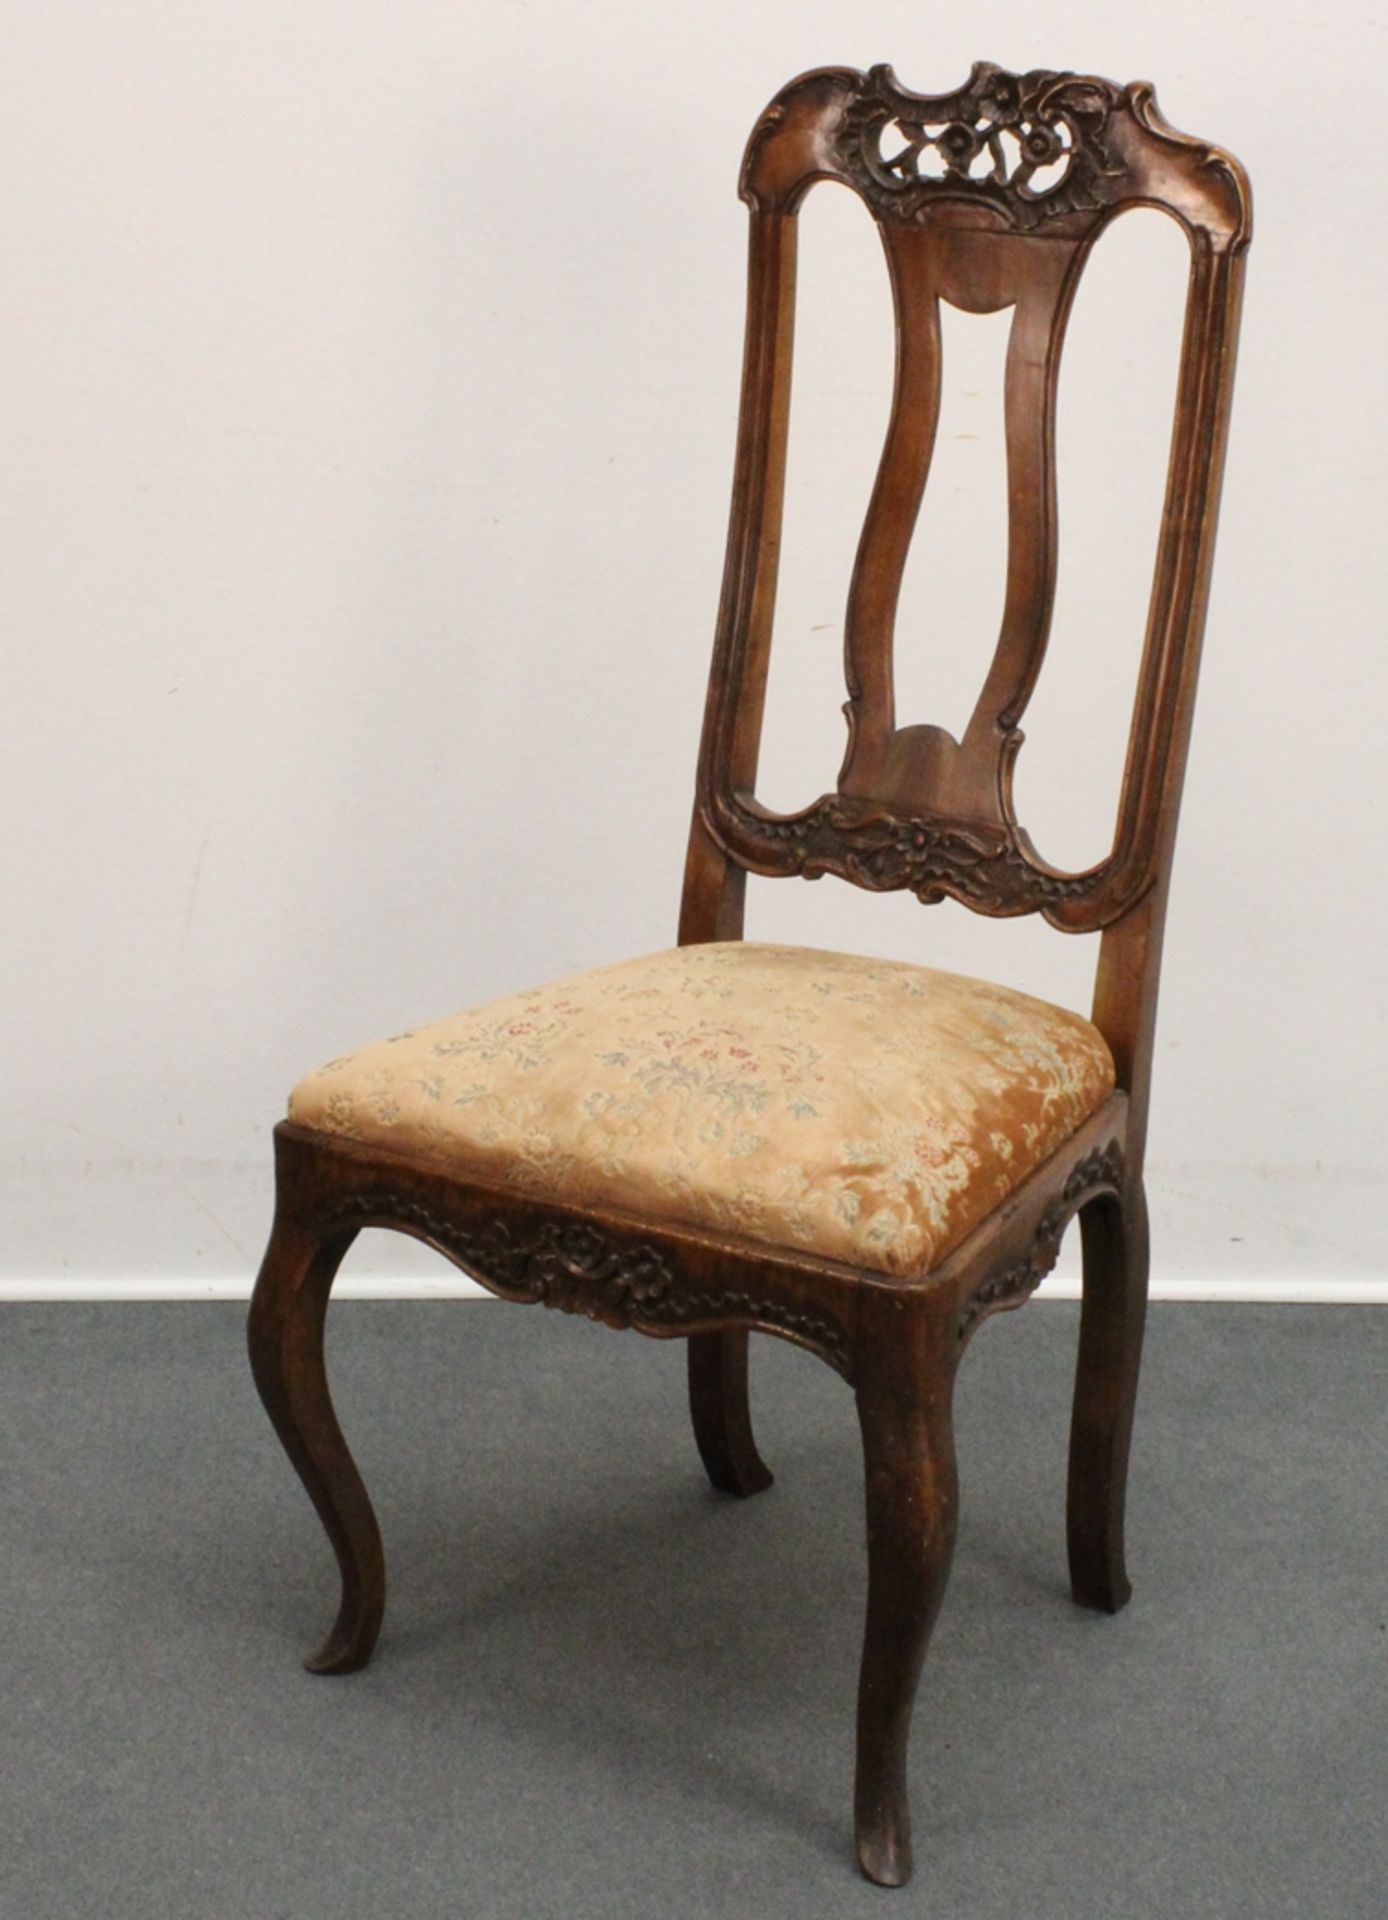 3 Stühle, Barock, Holland, 18. Jh., Nussbaum, trapezförmiger Sitz auf geschwungenen Beinen mit hohe - Image 2 of 2